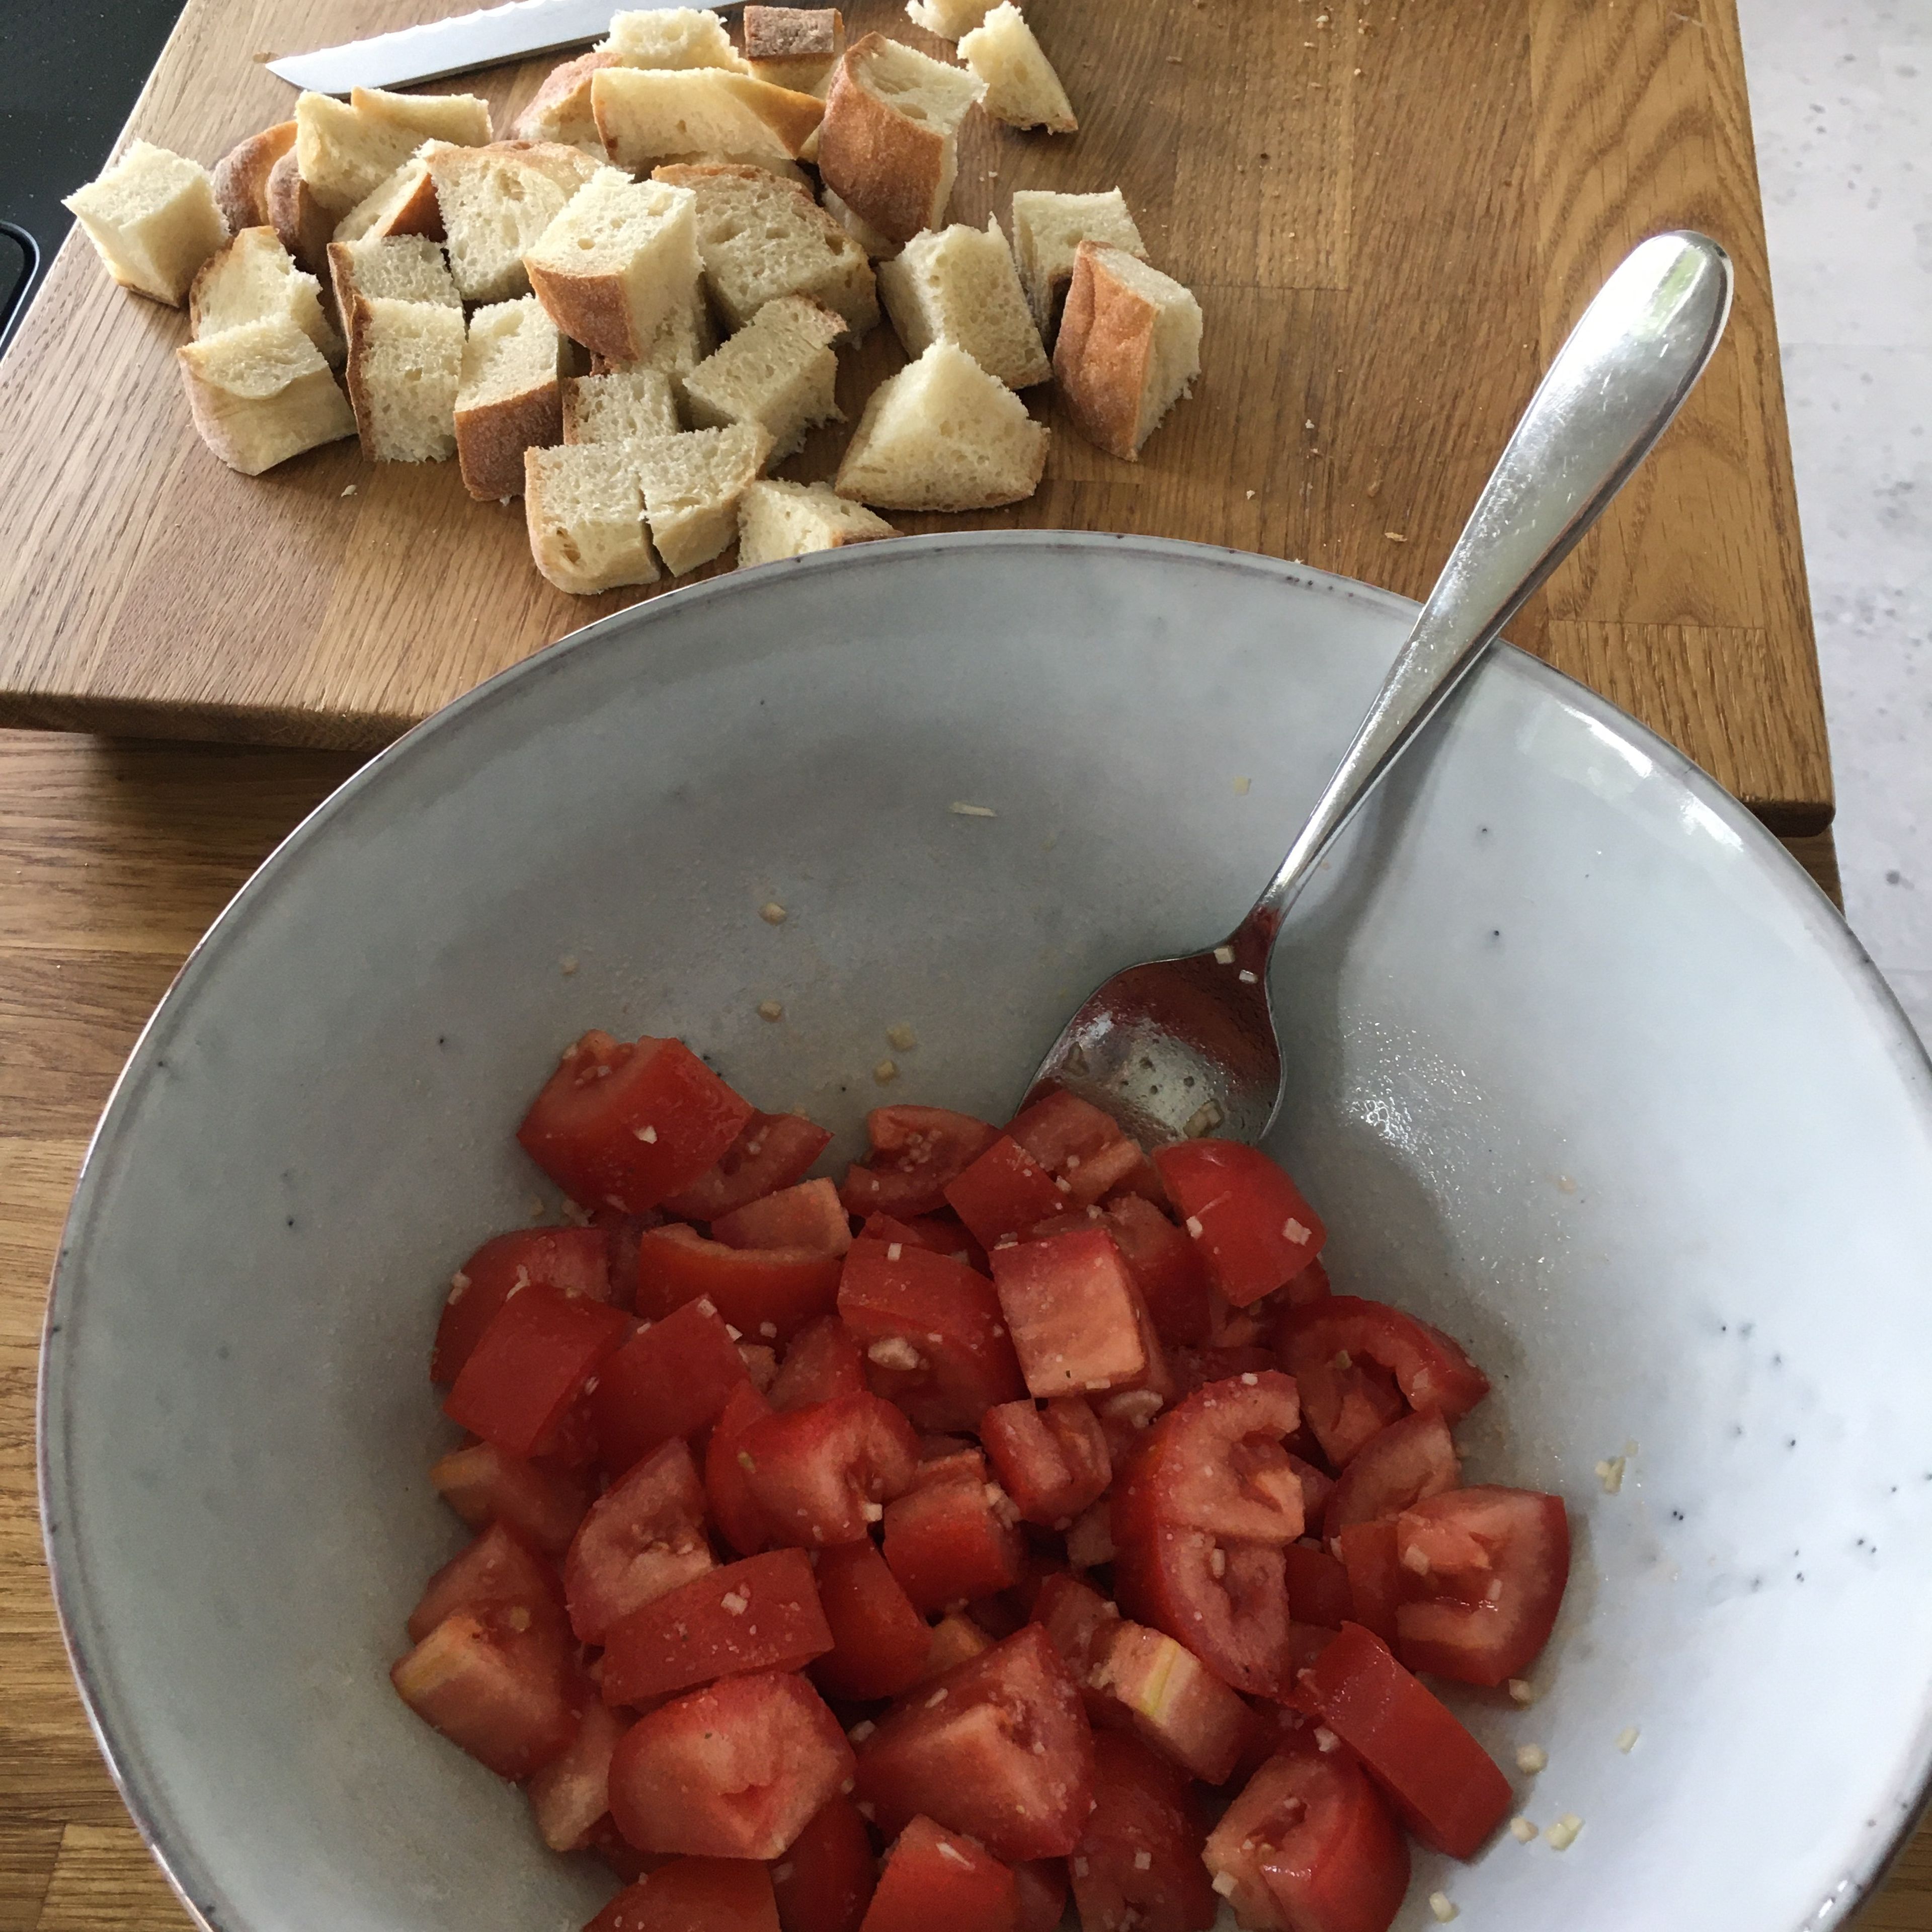 Brot in große Würfel schneiden. Tomate ebenfalls würfeln und mit fein gehacktem Knoblauch, Zucker, Salz und einem EL Olivenöl marinieren. Pinienkerne ohne Öl in der Pfanne rösten.